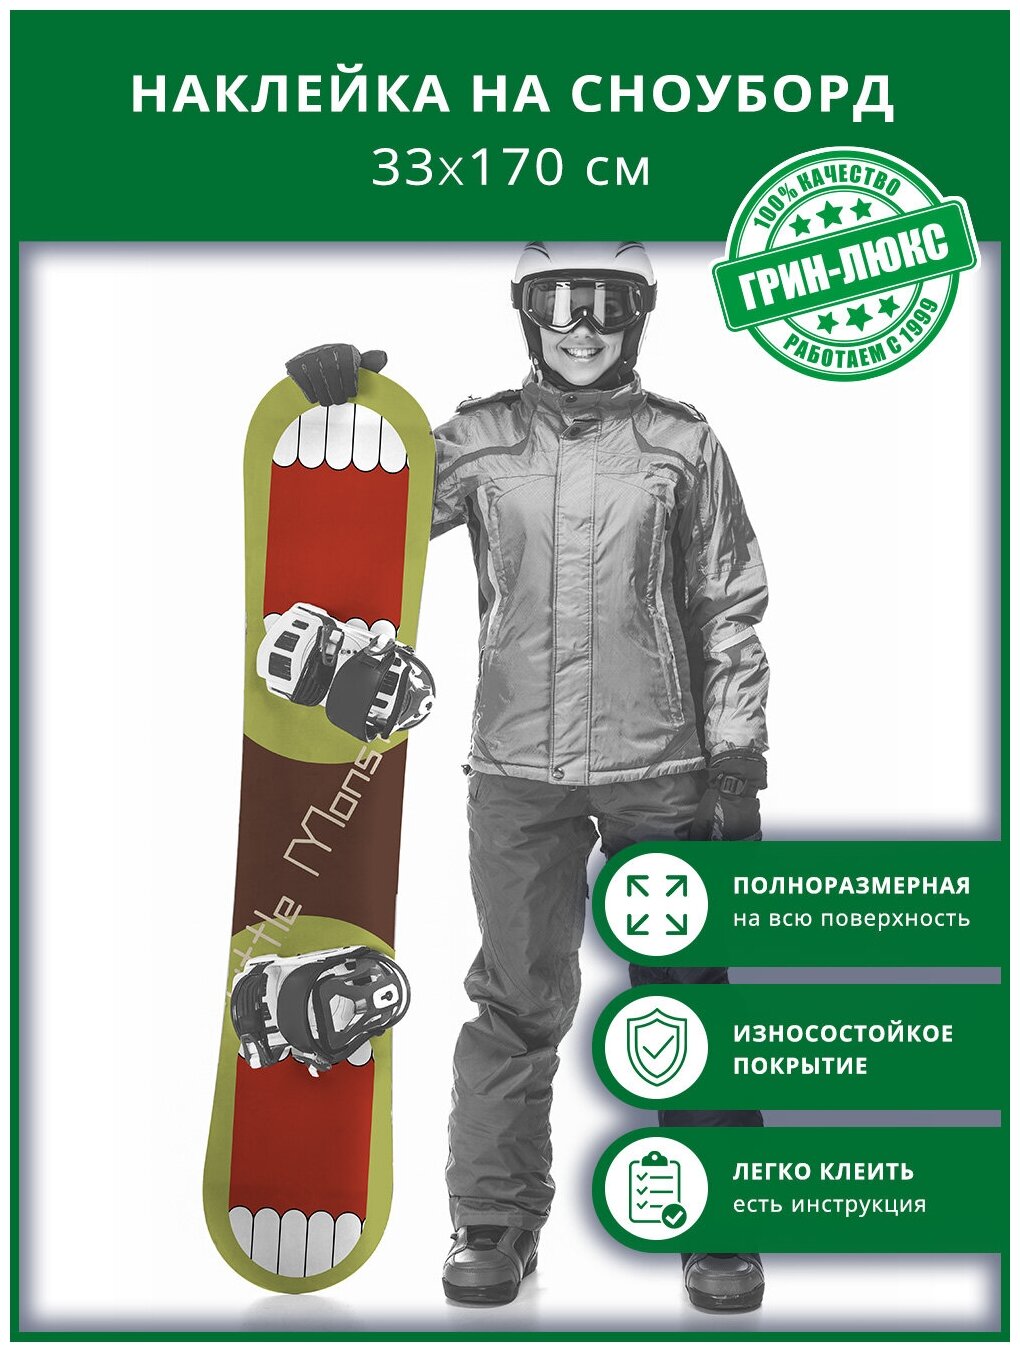 Наклейка на сноуборд с защитным глянцевым покрытием 33х170 см "Маленький монстр"